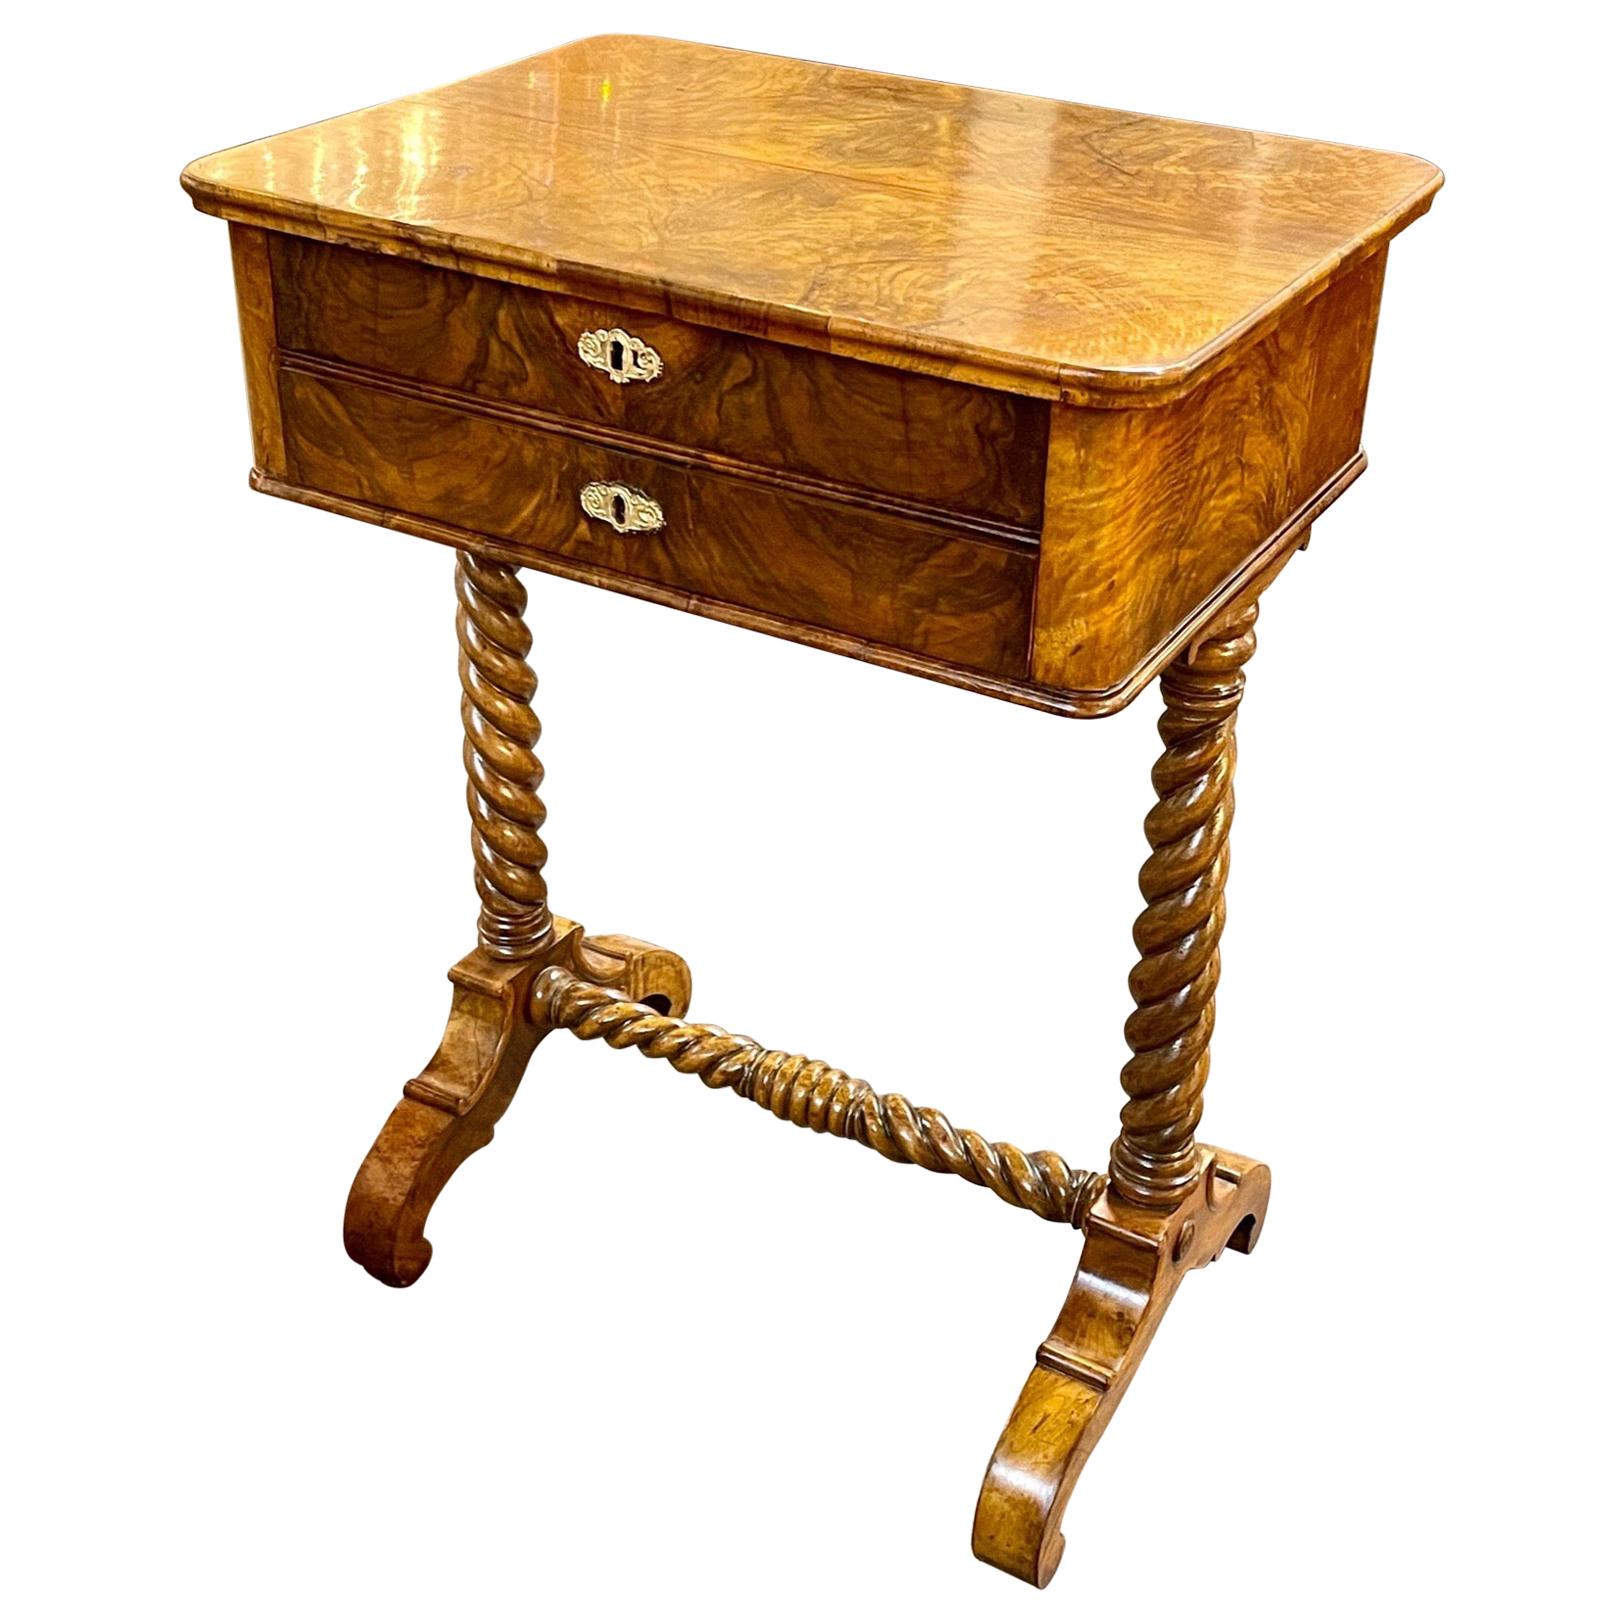 19th Century English Burl Walnut Side Table with Barley Twist Legs